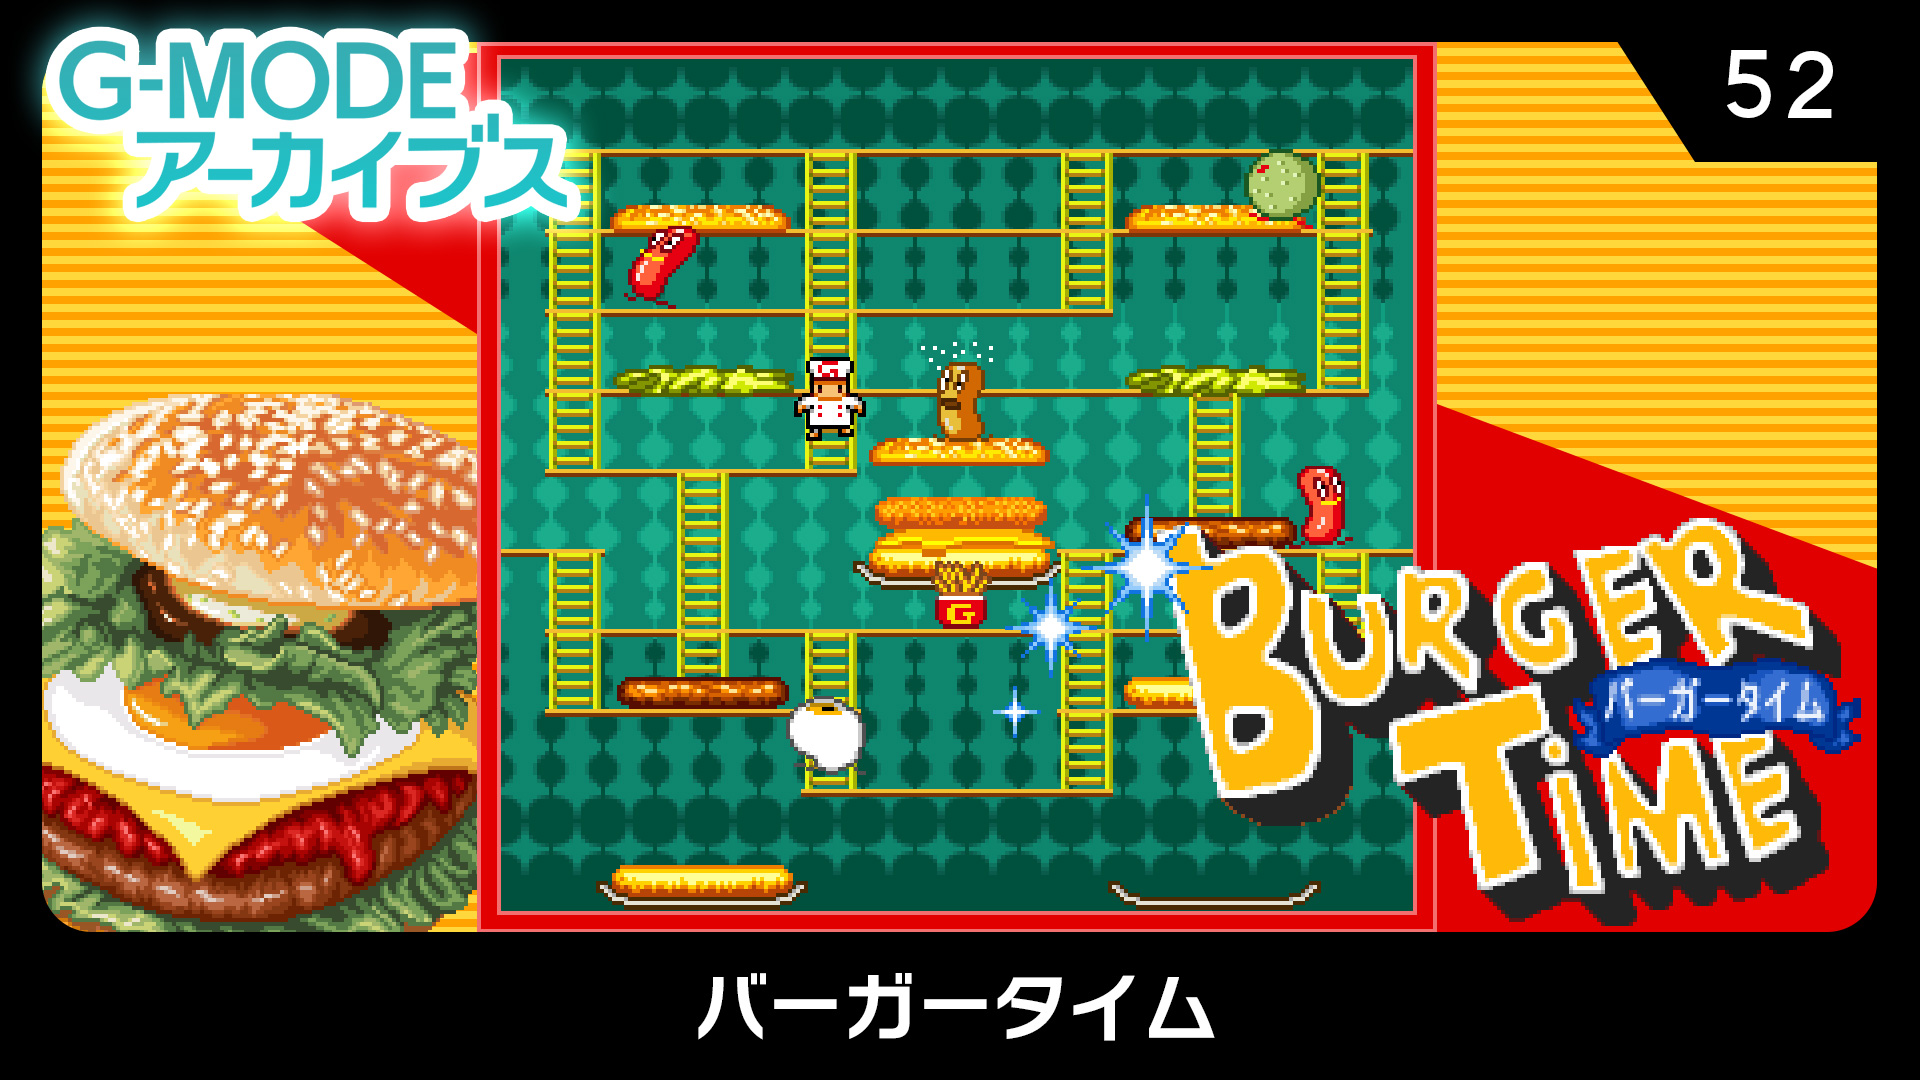 昭和レトロ ゲーム バーガータイム BurgeTime ゲーム機 - テレビゲーム